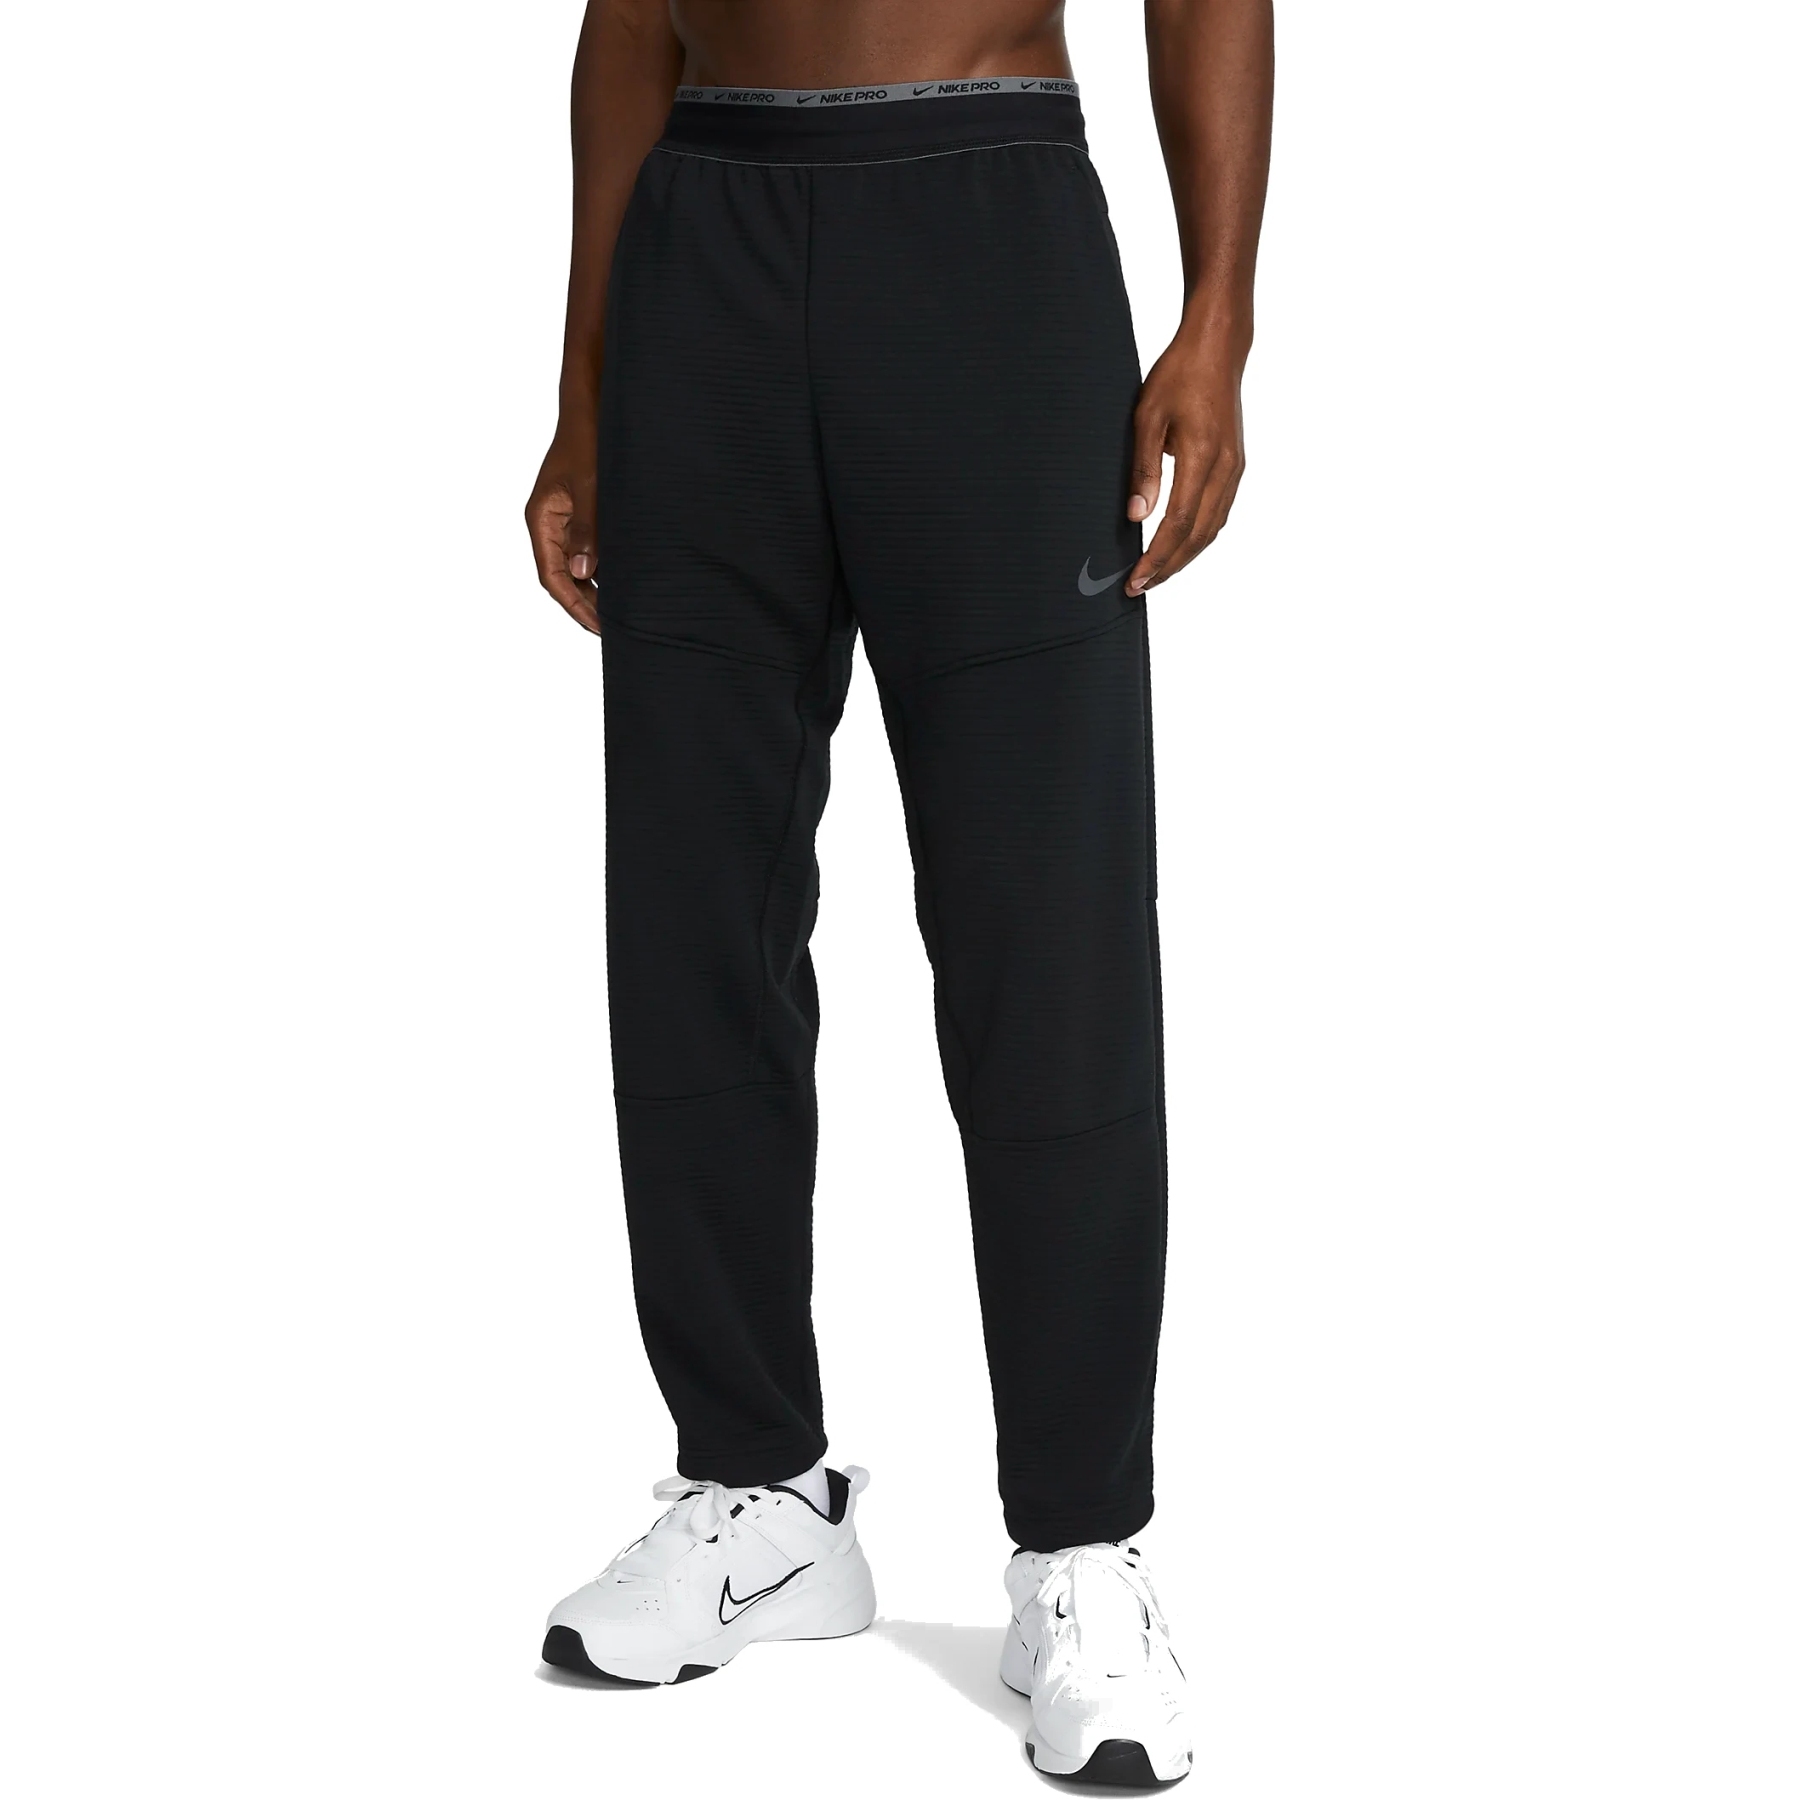 Produktbild von Nike Pro Fleece-Fitness-Hose für Herren - black/iron grey DV9910-010